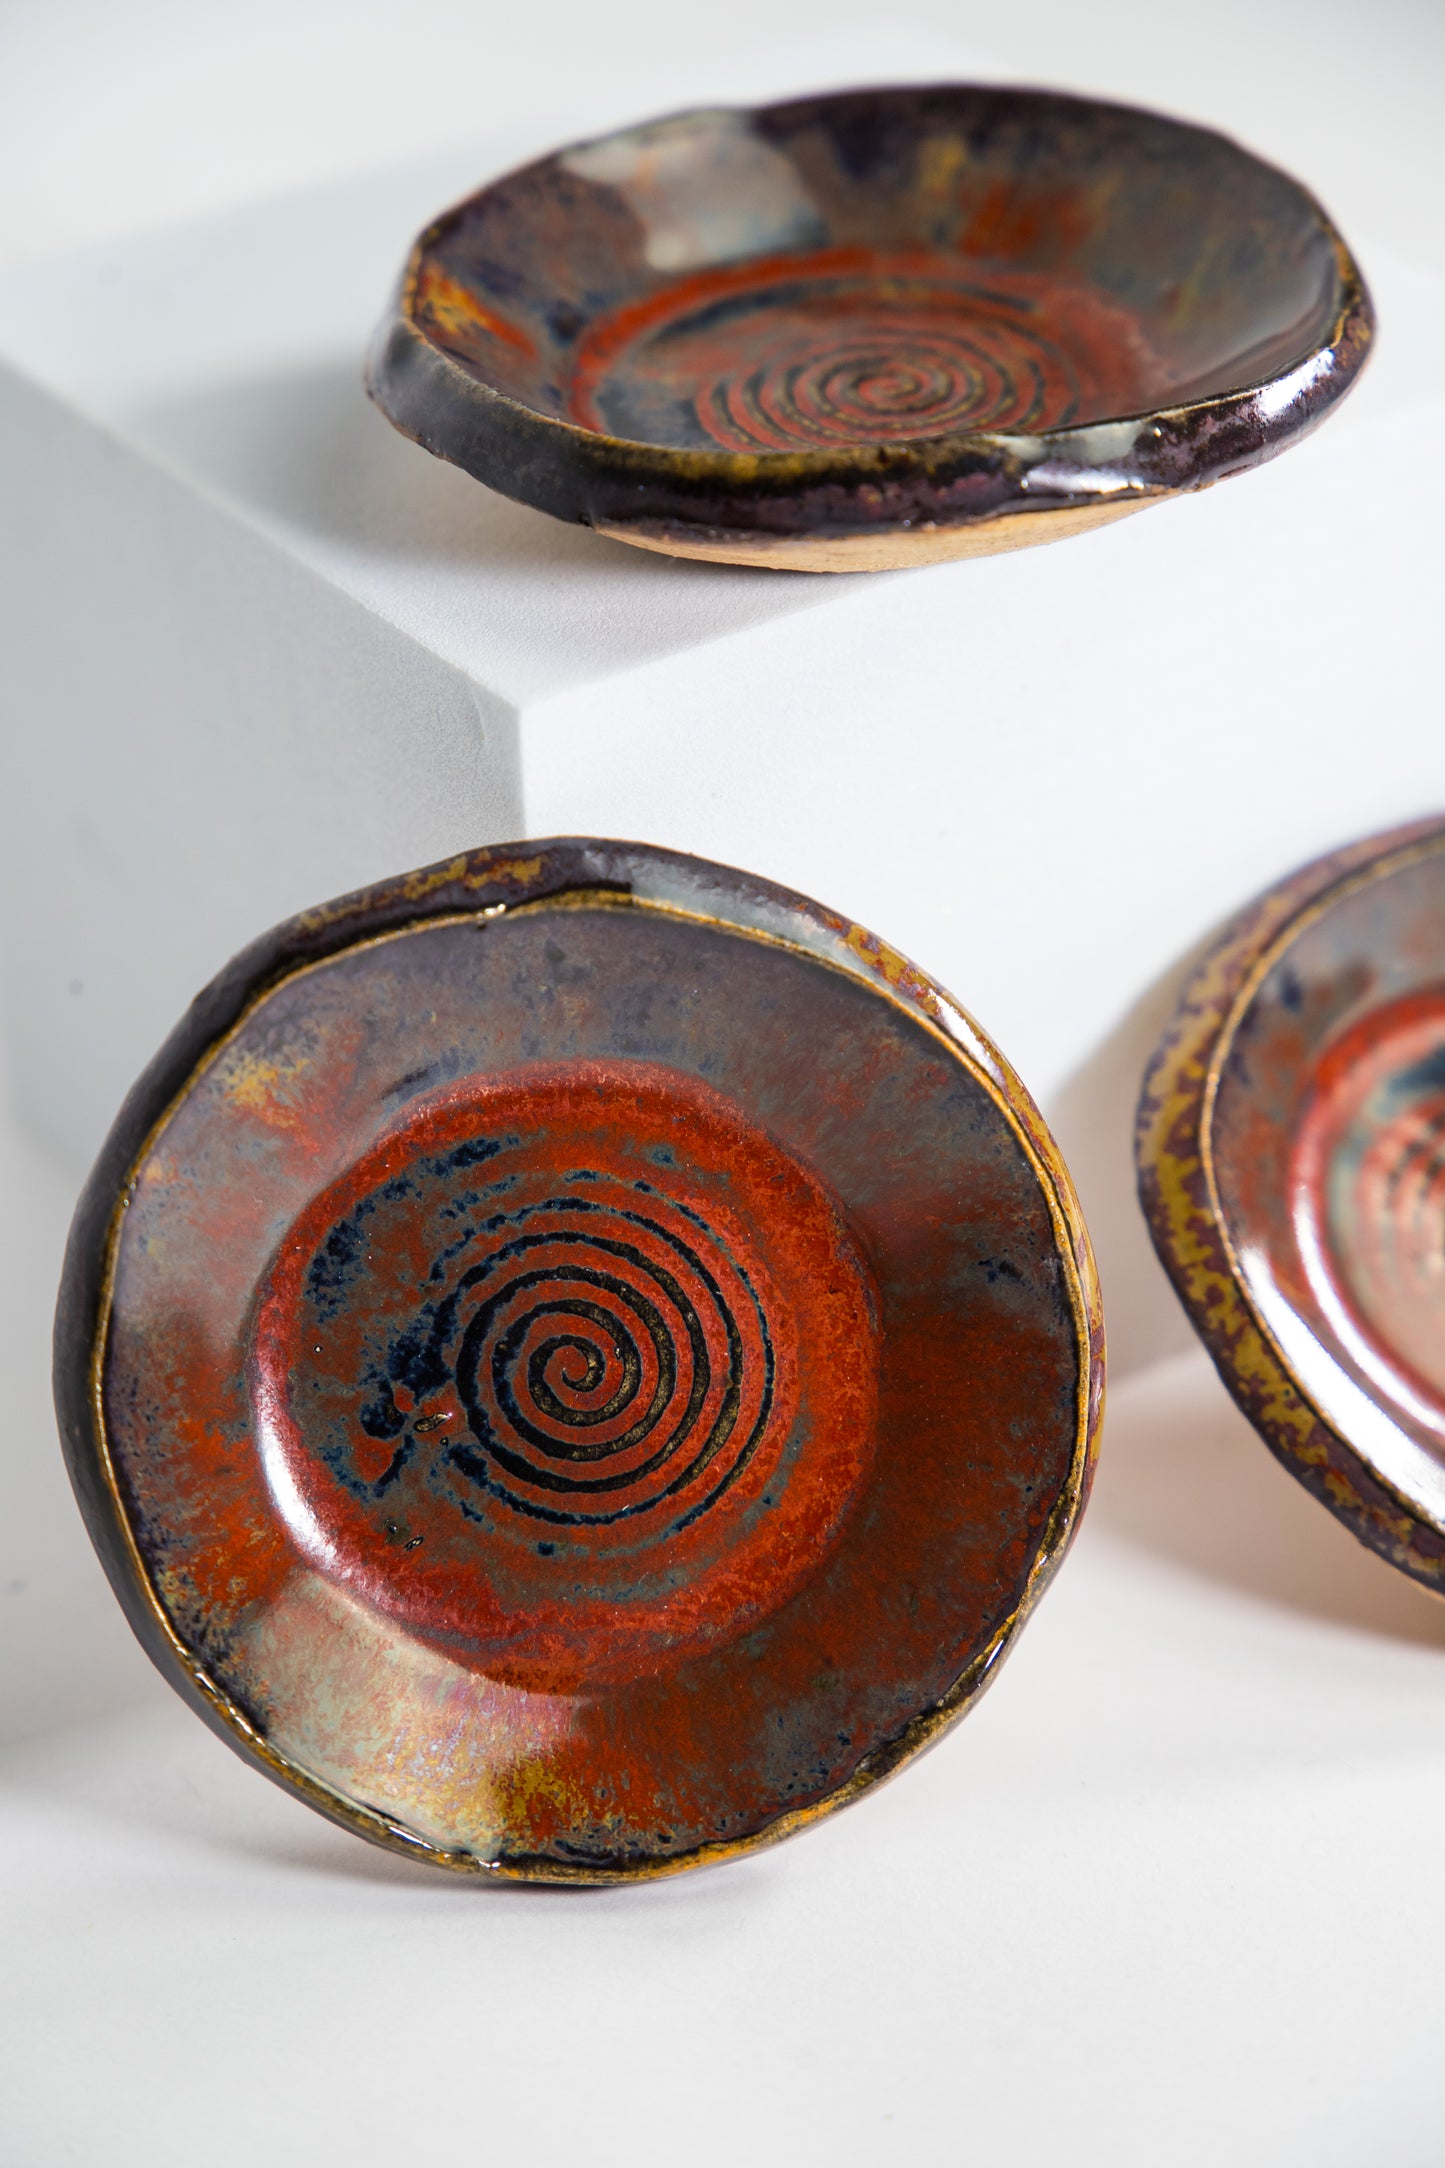 Round Ceramic Dish Set